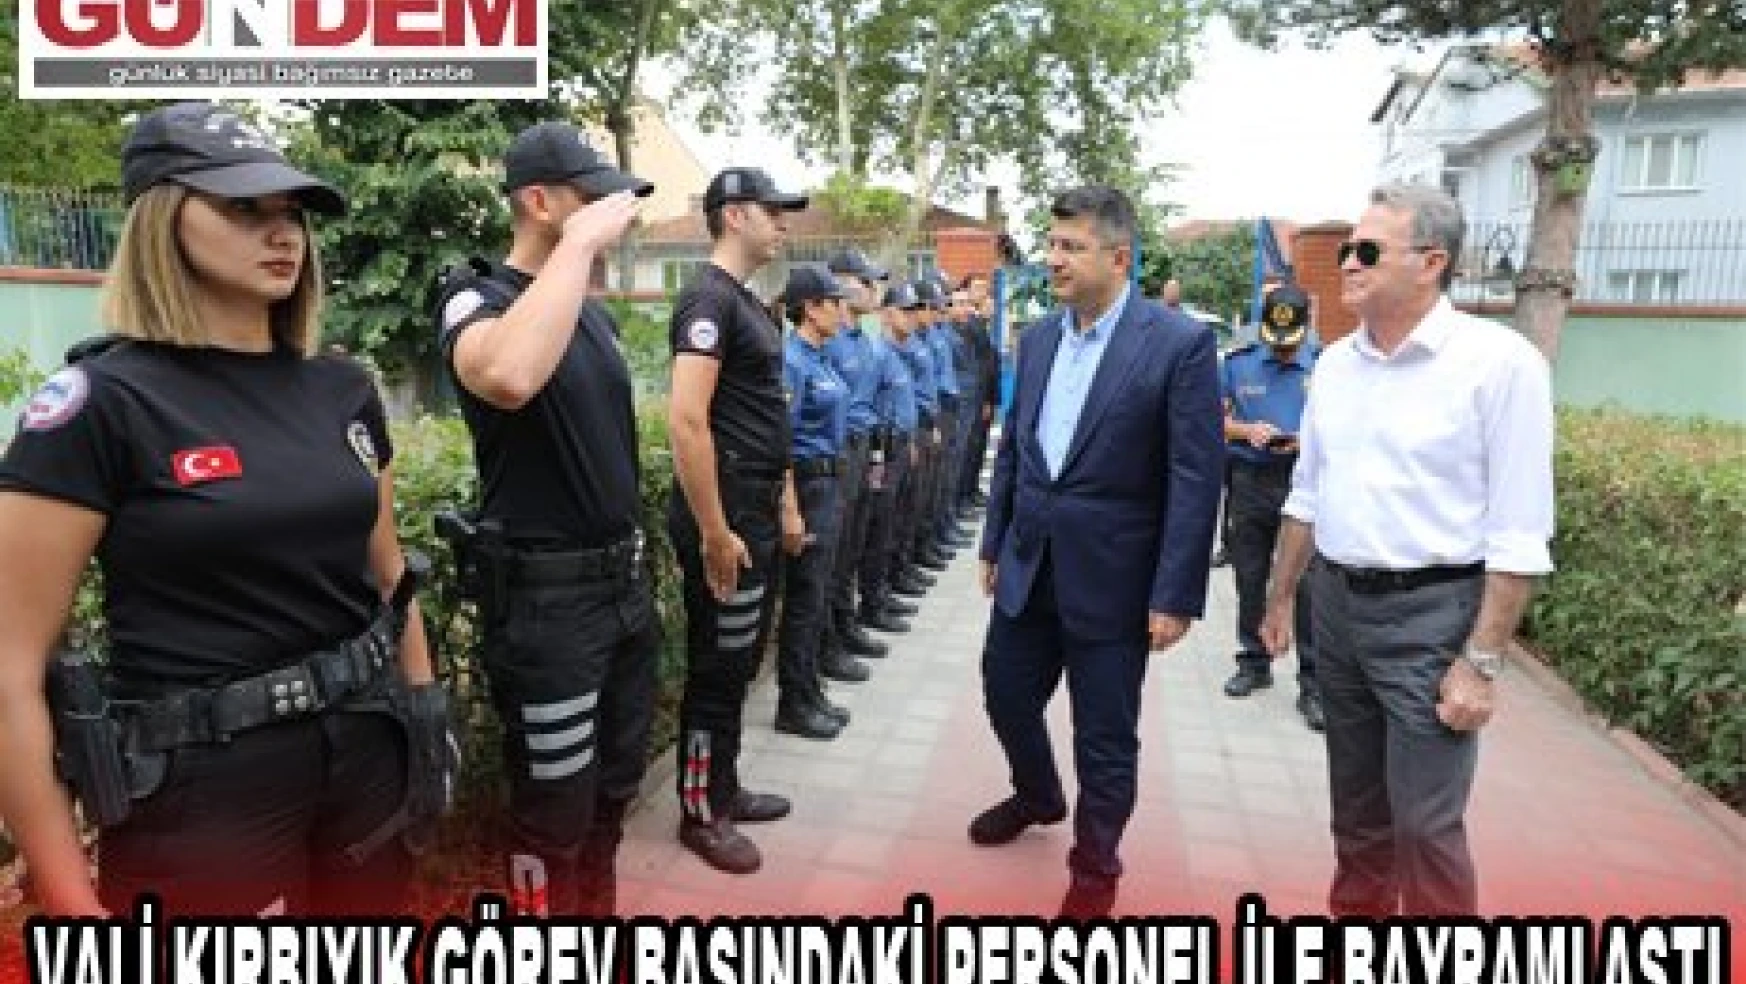 Edirne Valisi H. Kürşat Kırbıyık görev başındaki kamu personeliyle bayramlaştı